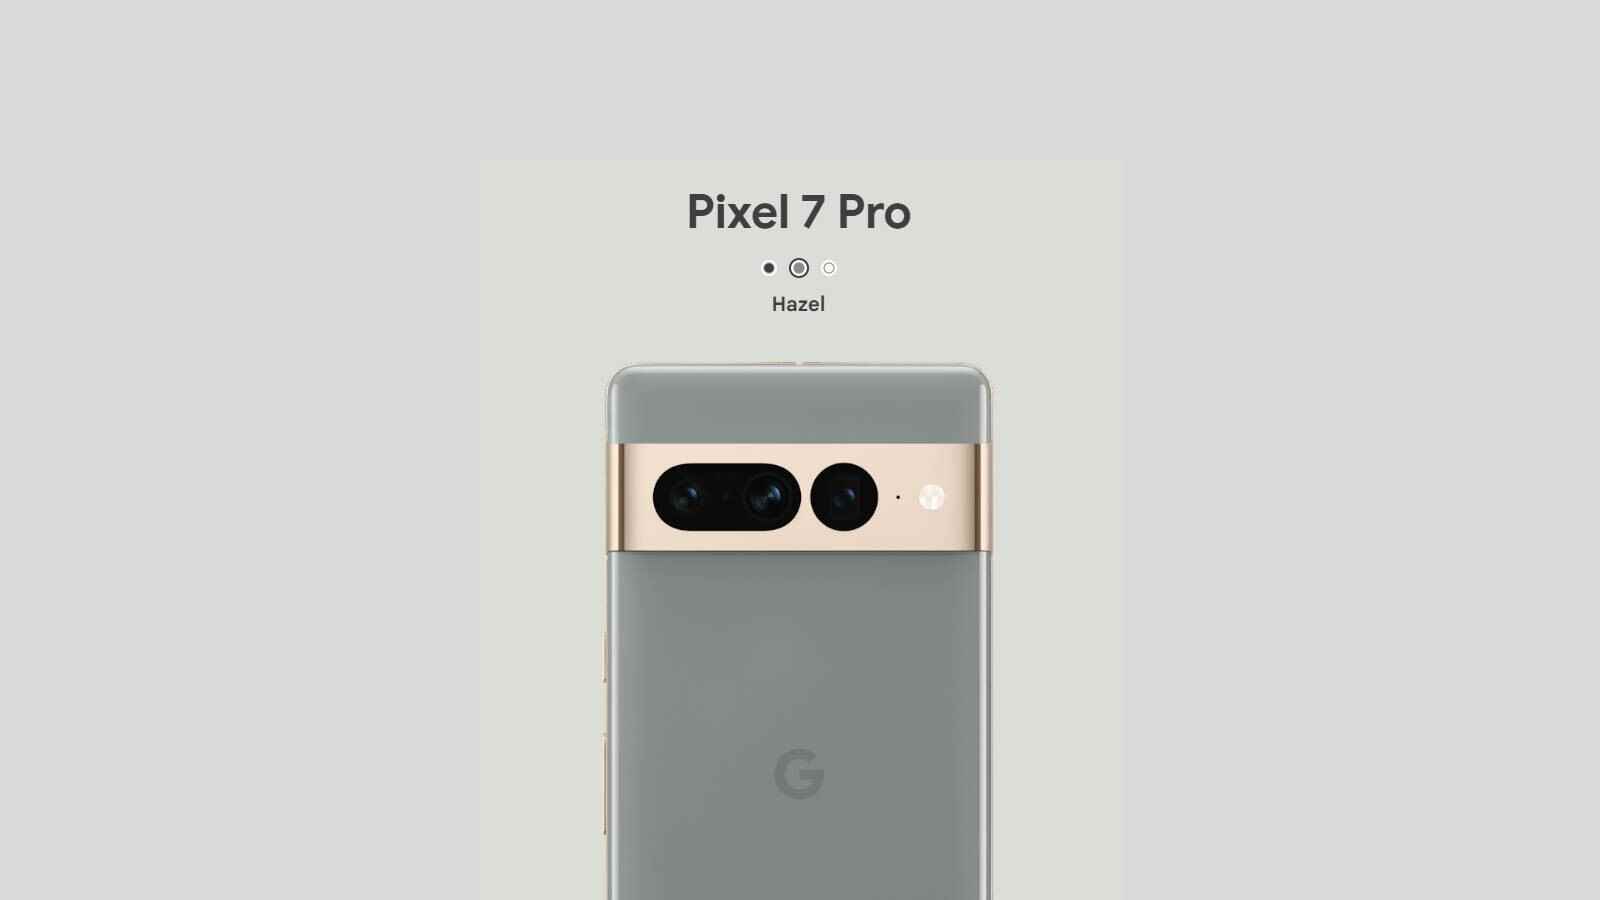 Google tarafından tasvir edildiği şekliyle Hazel Pixel 7 Pro - Hey Google, tanıtım materyaliniz Hazel Pixel 7 Pro'nun hakkını vermedi